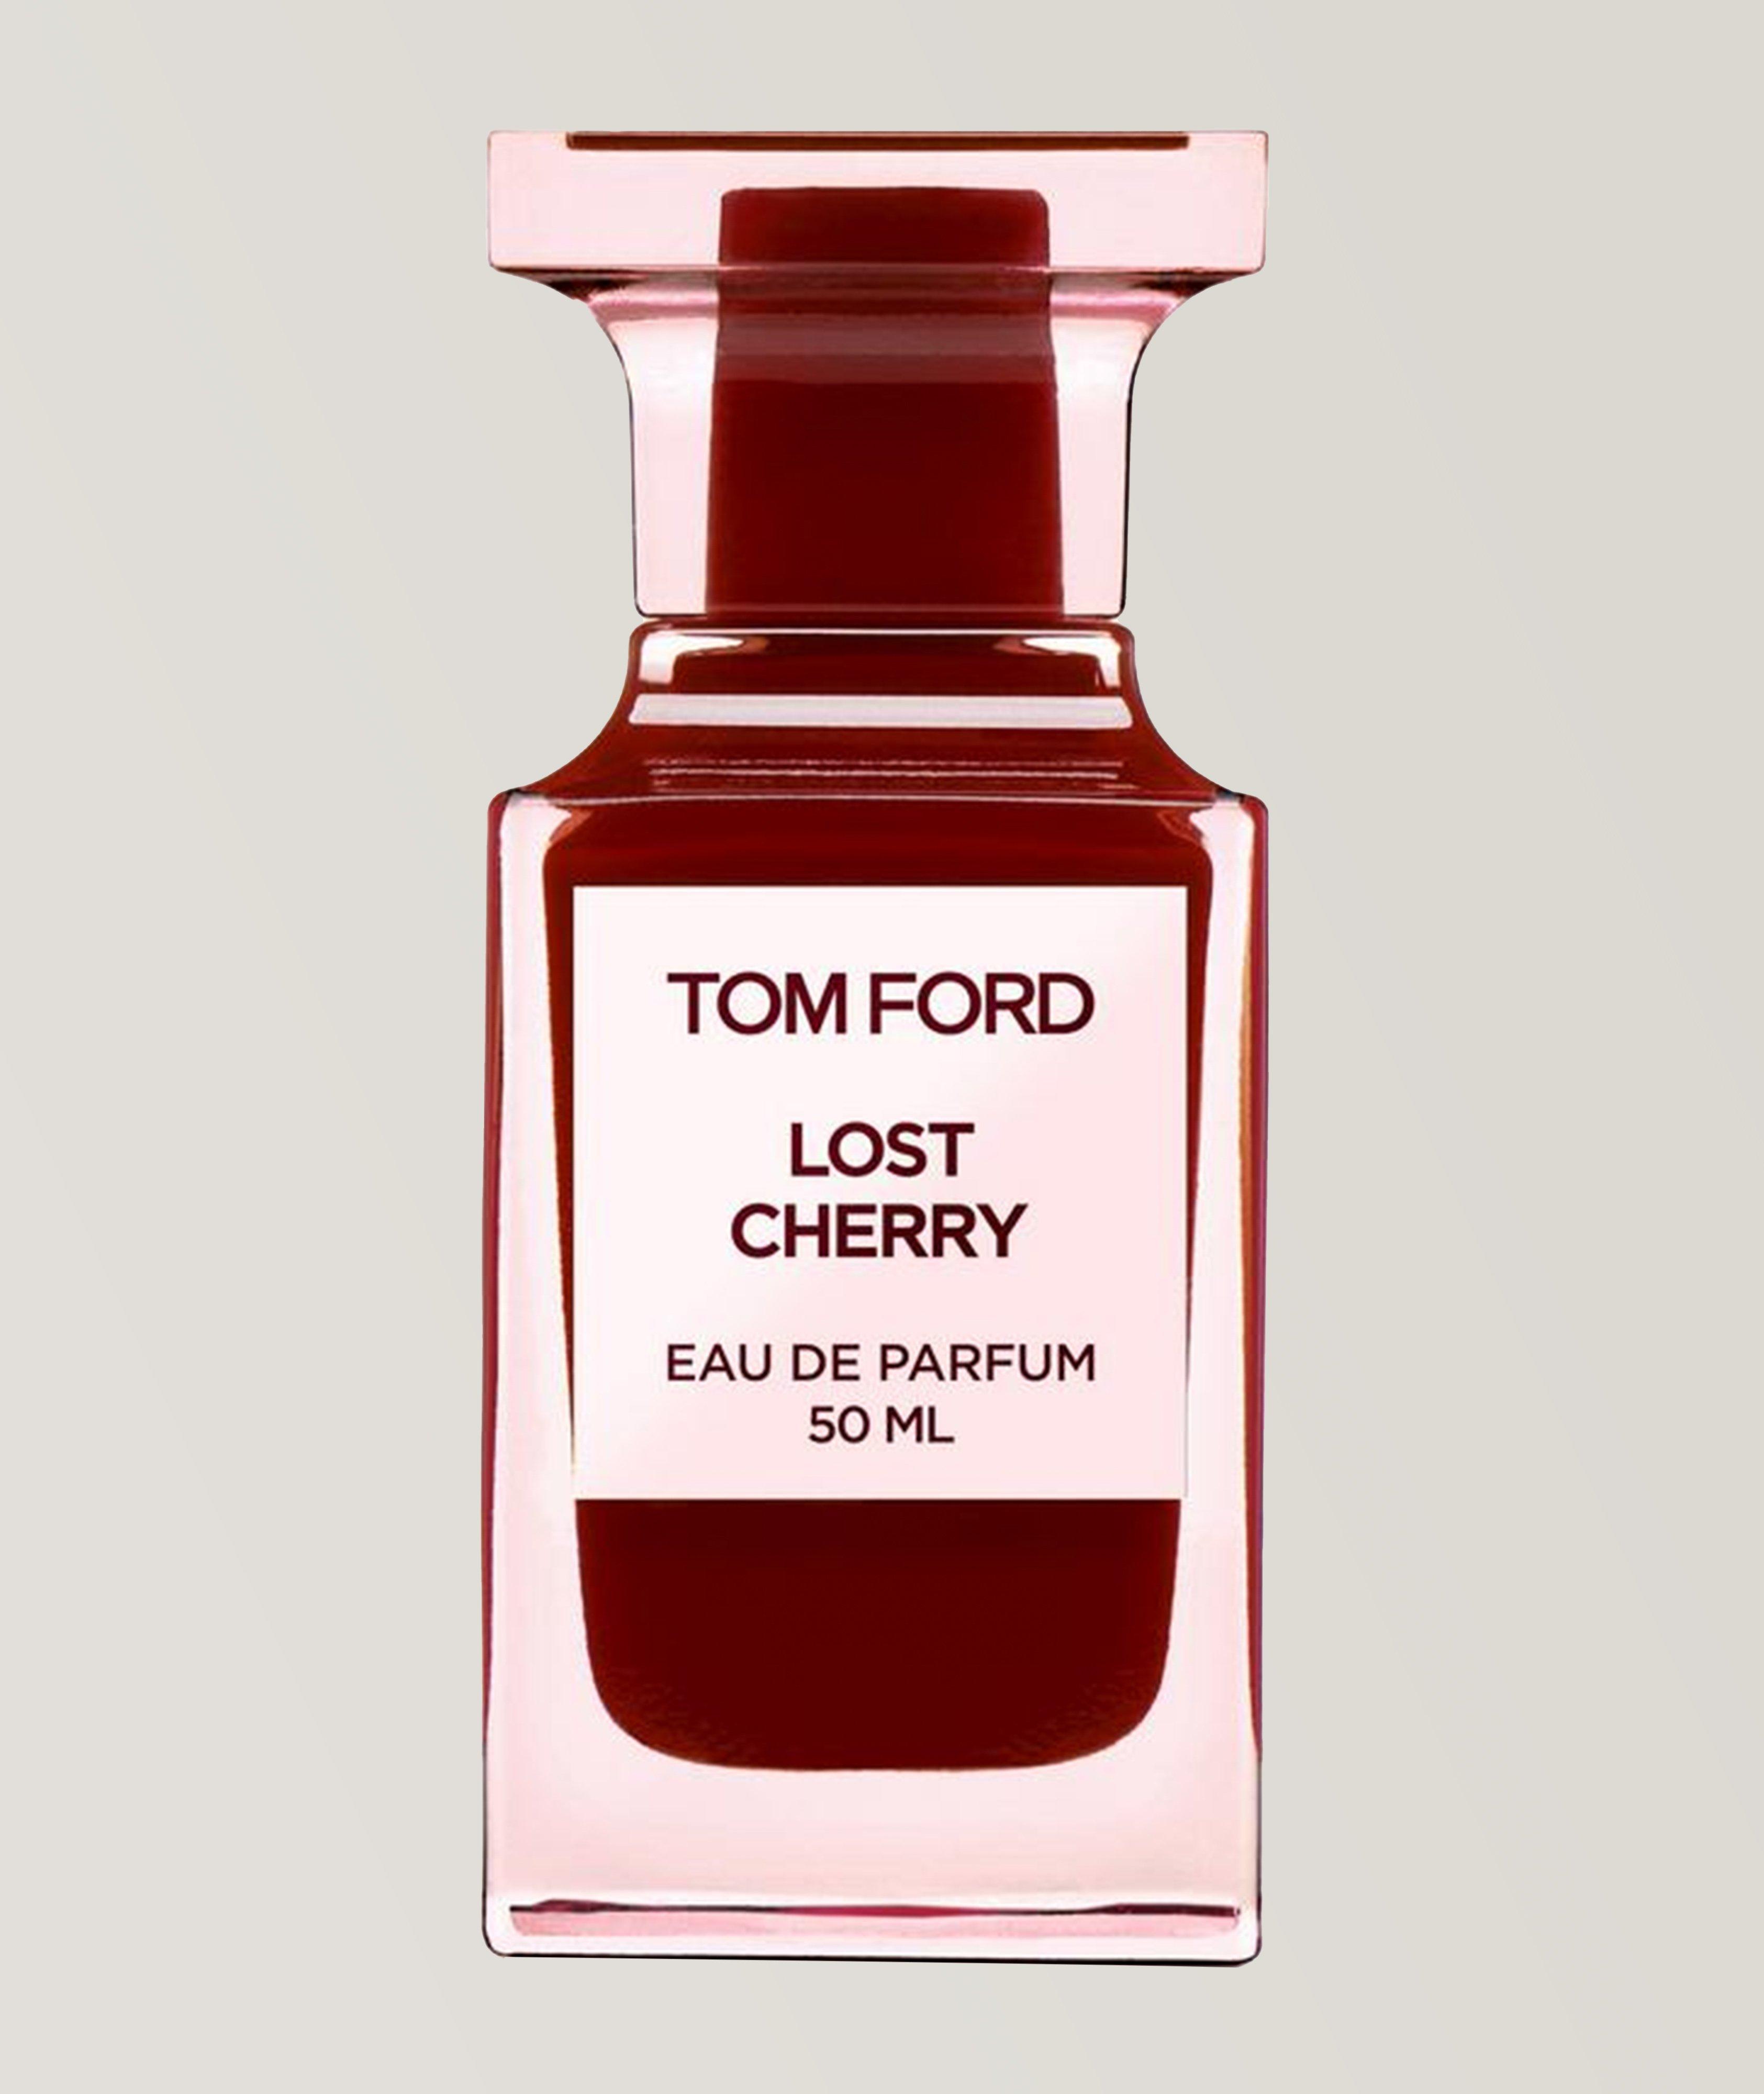 TOM FORD Eau de parfum Lost Cherry (50 ml)